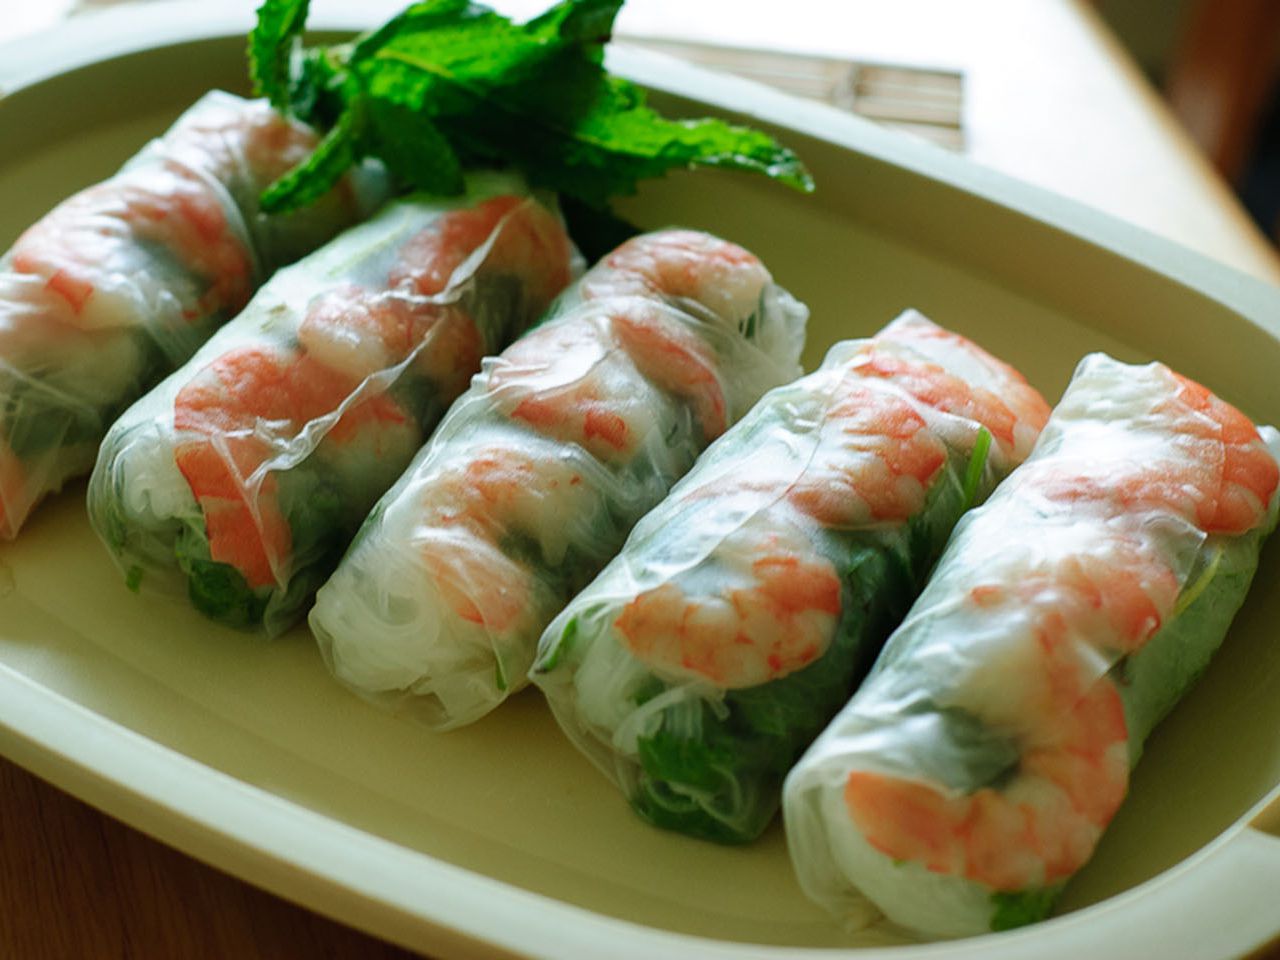 Vietnamese Fresh Spring Rolls Recipe | Allrecipes